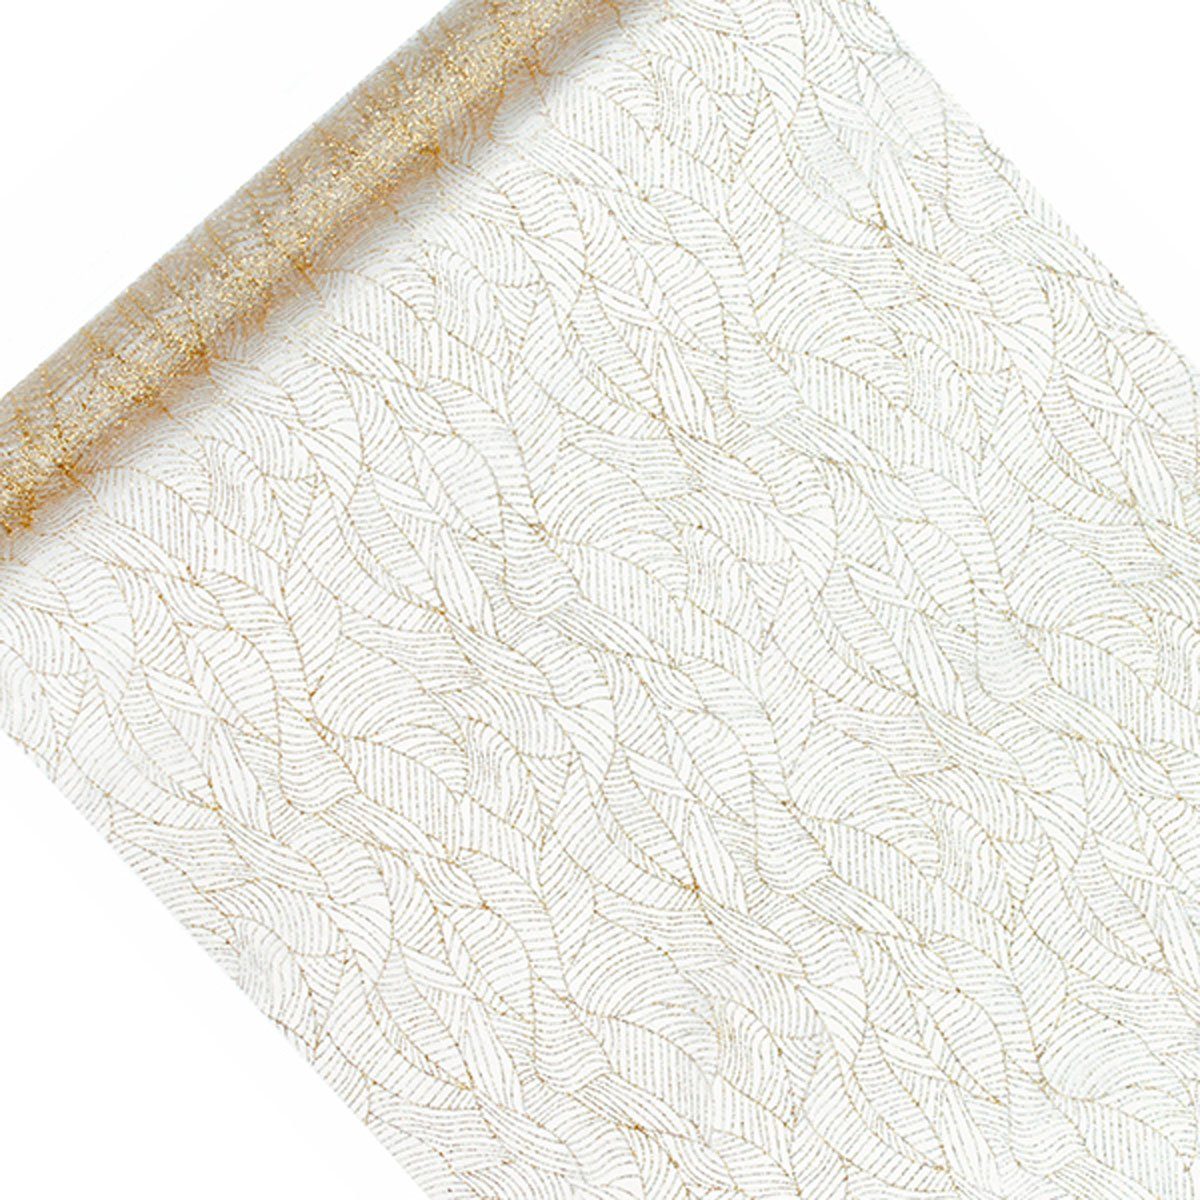 SCHÖNER LEBEN. Tischläufer Deko Tischband weiß gold Blätter 0,48x9m bedruckt Organza